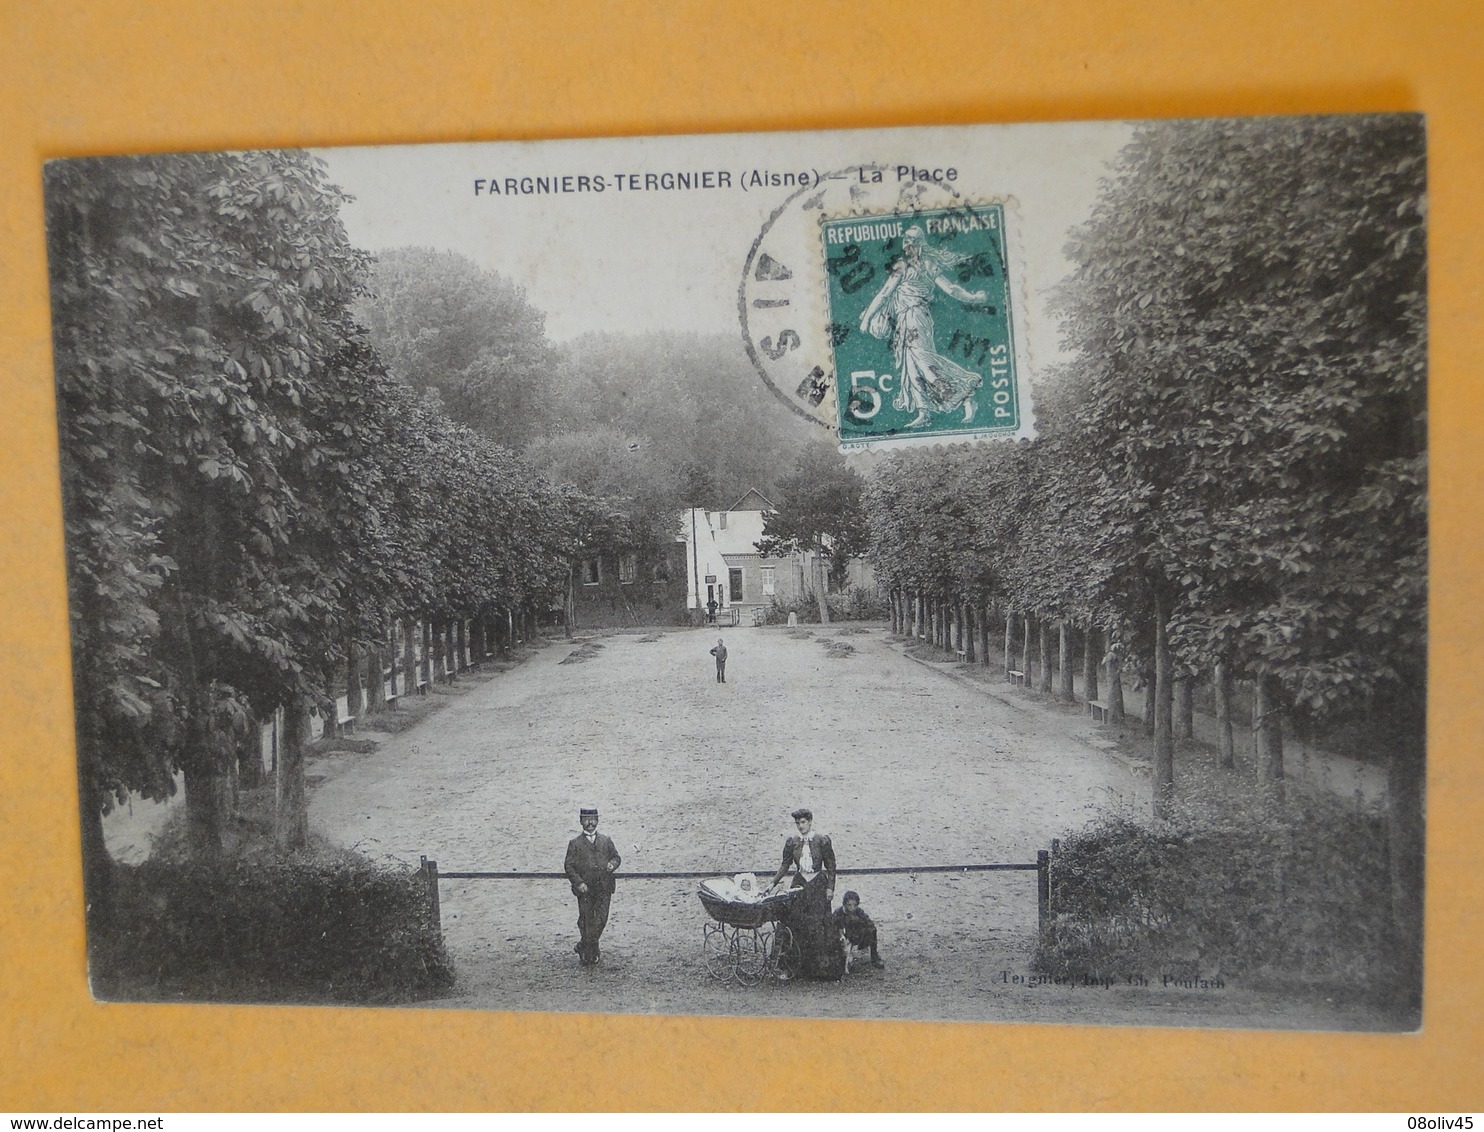 Joli lot de 50 Cartes Postales Anciennes FRANCE -- TOUTES ANIMEES - Voir les 50 scans - Lot N° 3